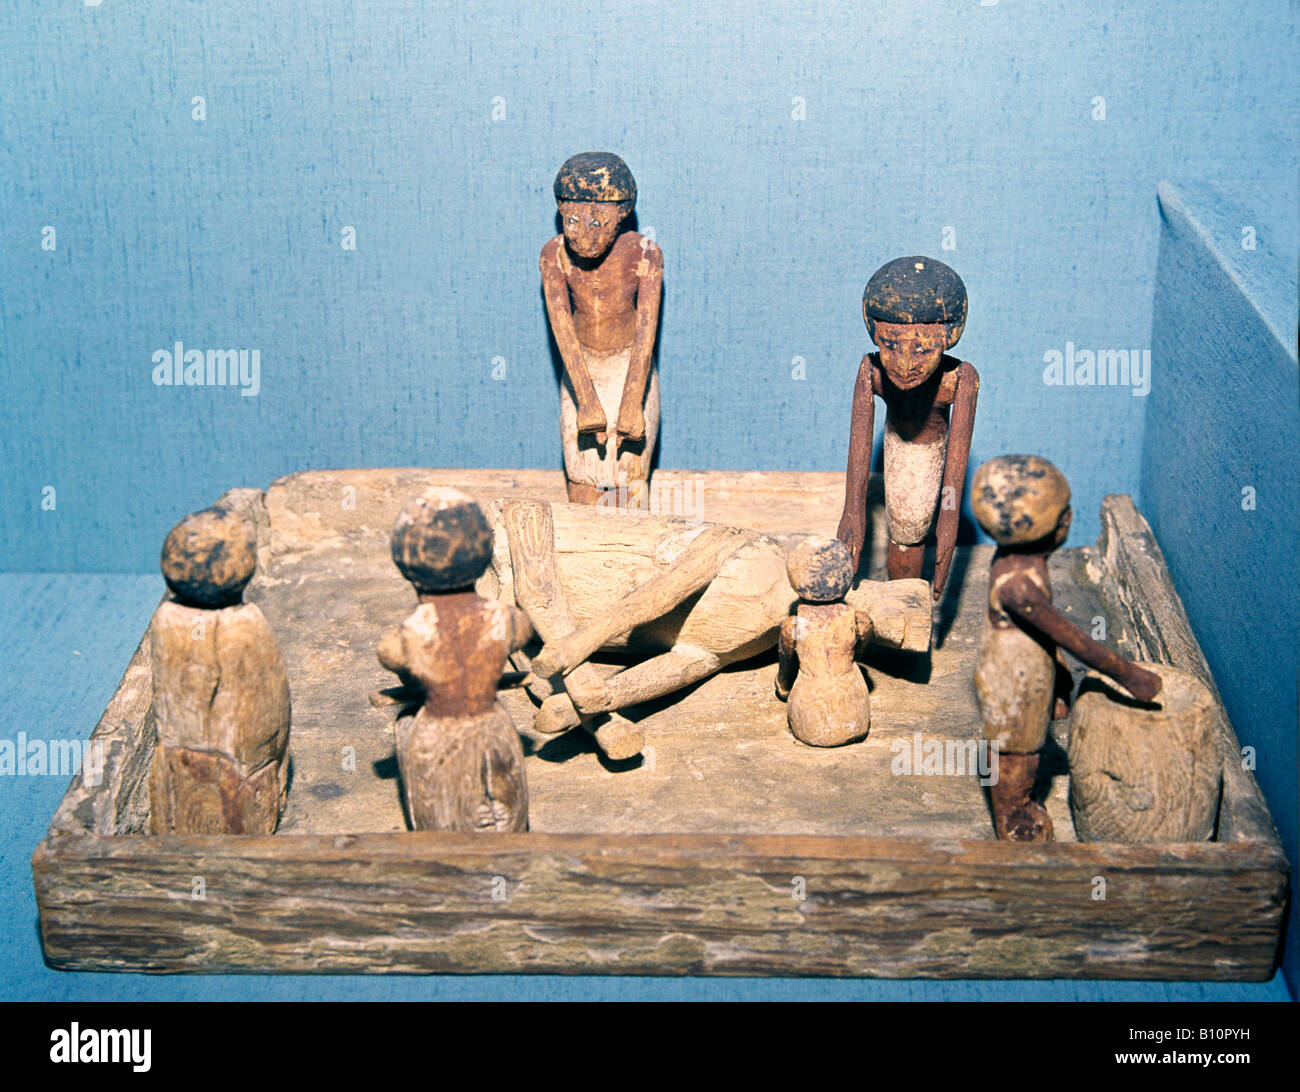 Holz- grabkunst Modell. die Tötung eines Stiers. 1900 v. Chr. Ägypten Stockfoto